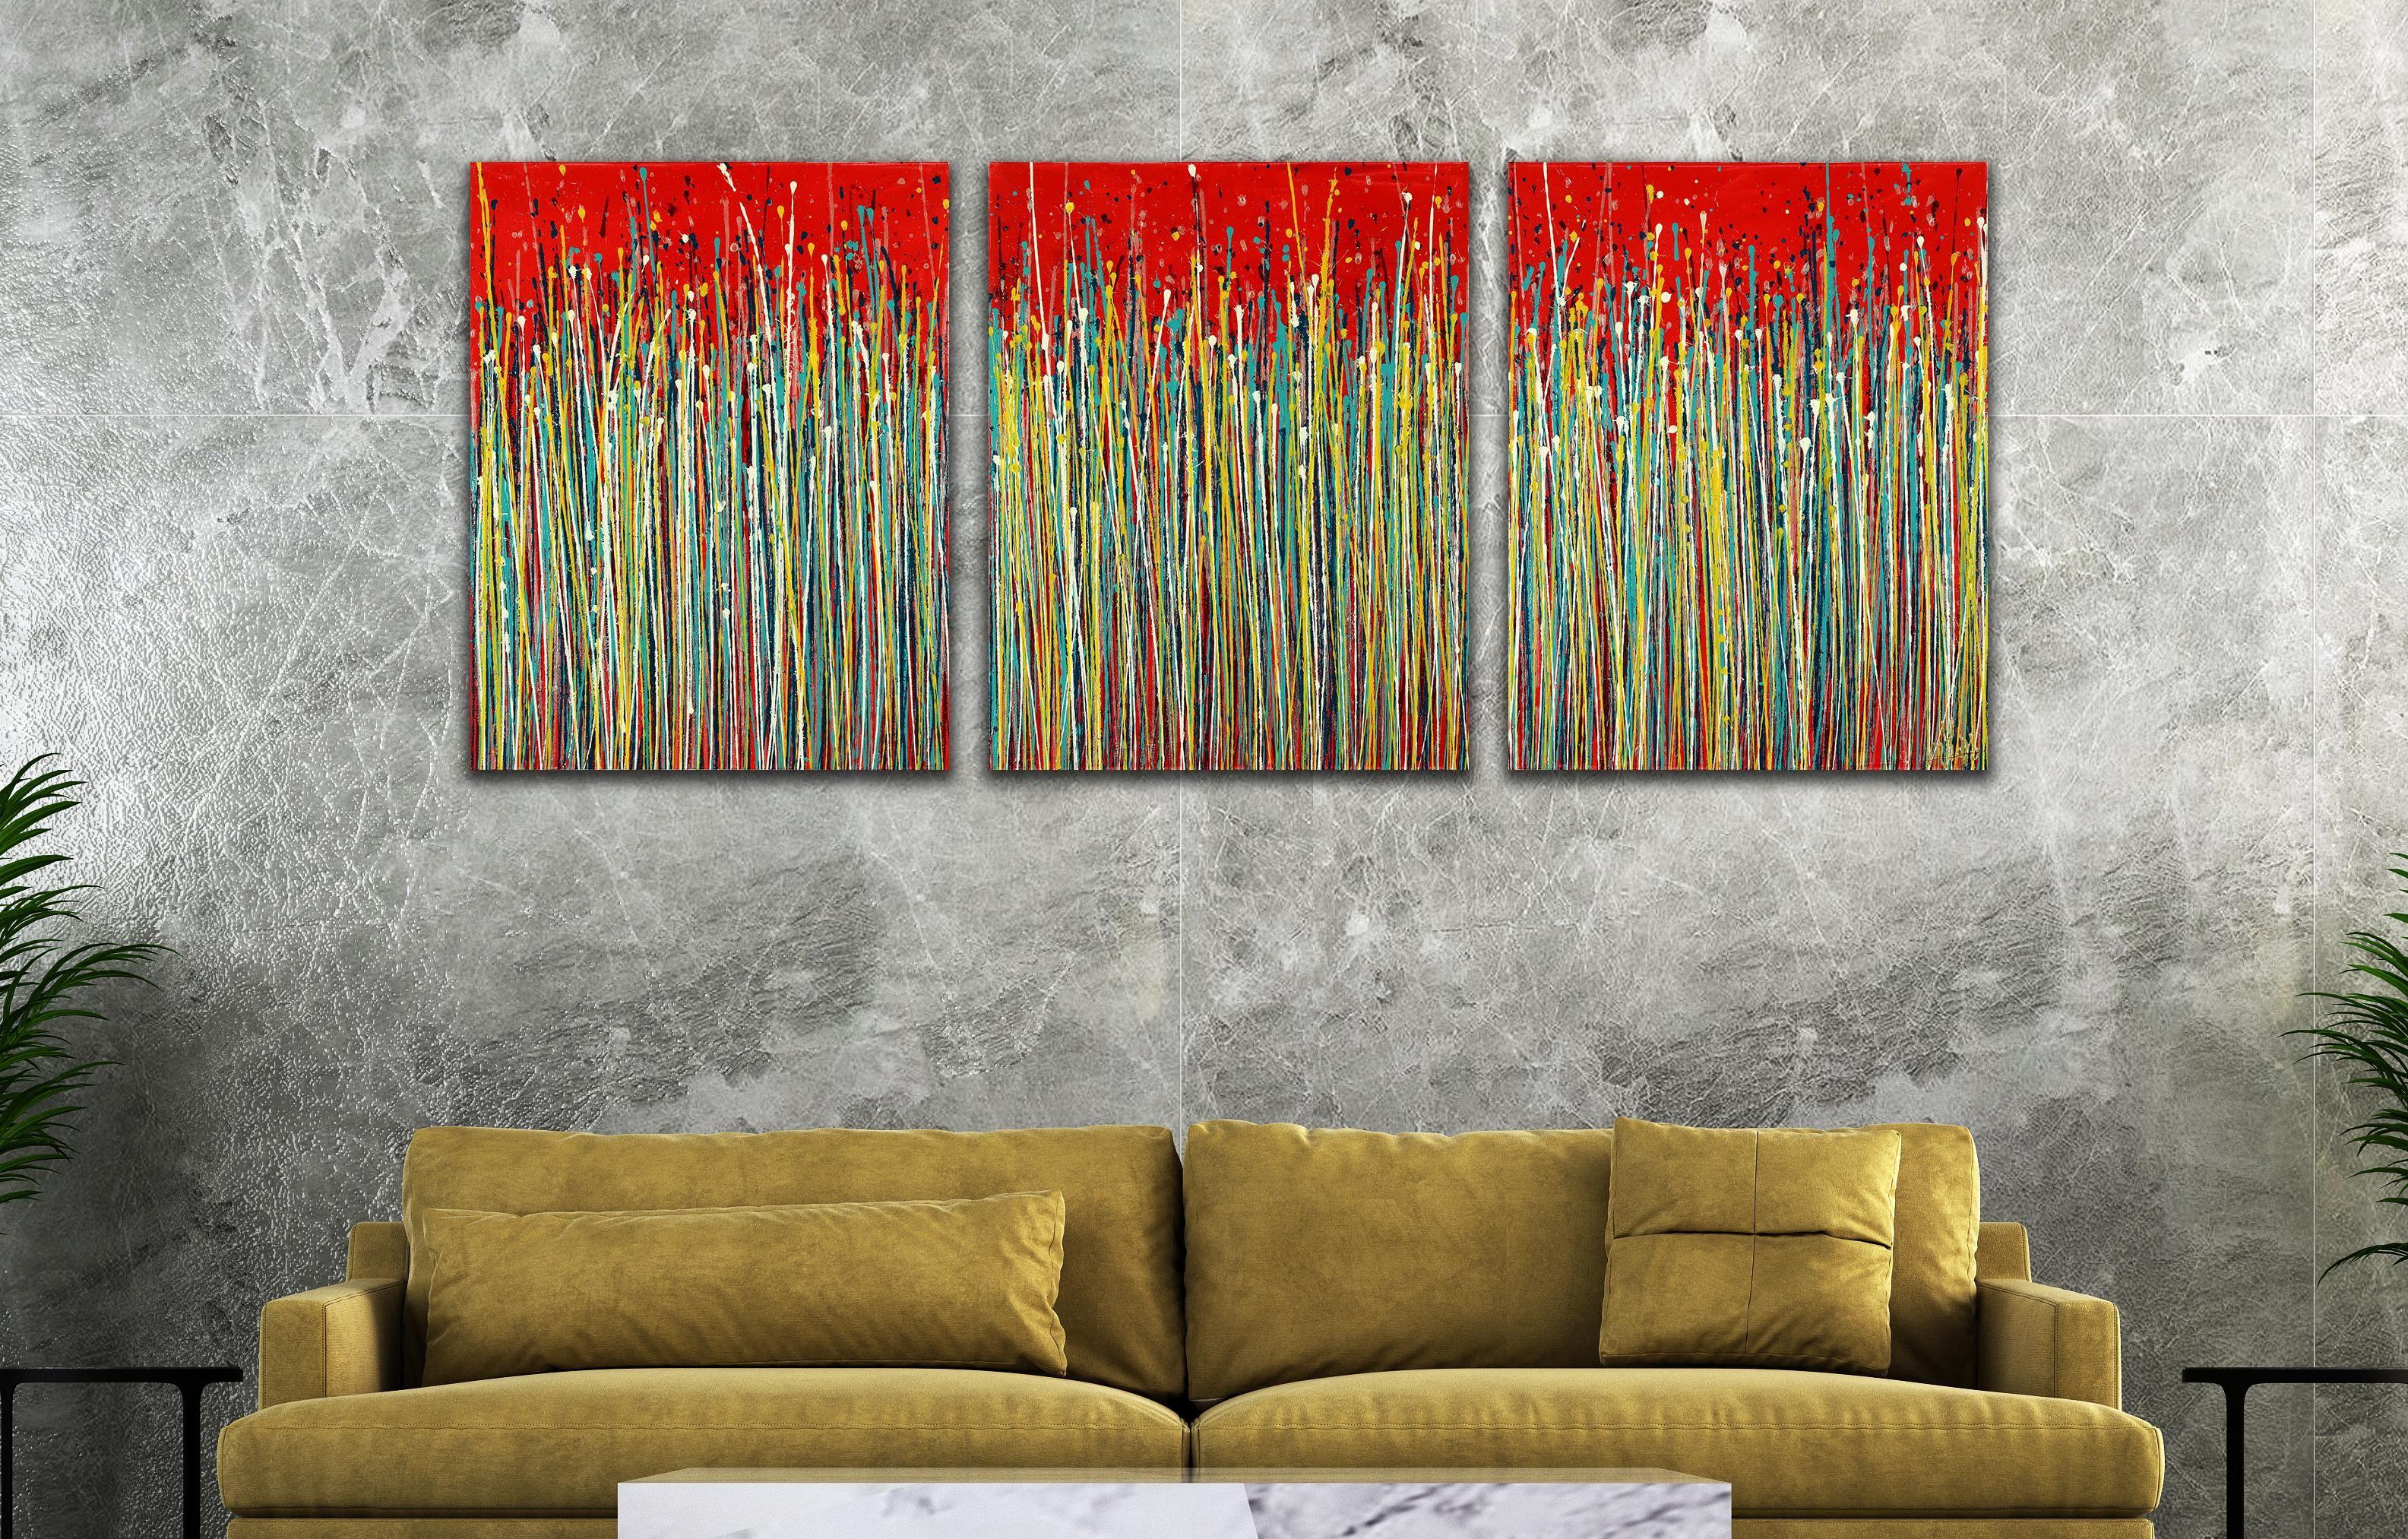 Triptychon - Drei Leinwände, jeweils 24 B x 30 H x 0,7 cm.    Ausdrucksstarke moderne Abstraktion, kühn und voller Leben, Glanz und Schimmer! Inspiriert von der Natur, viele helle Töne kombiniert mit Glimmerpartikeln und schillerndem Nieselregen